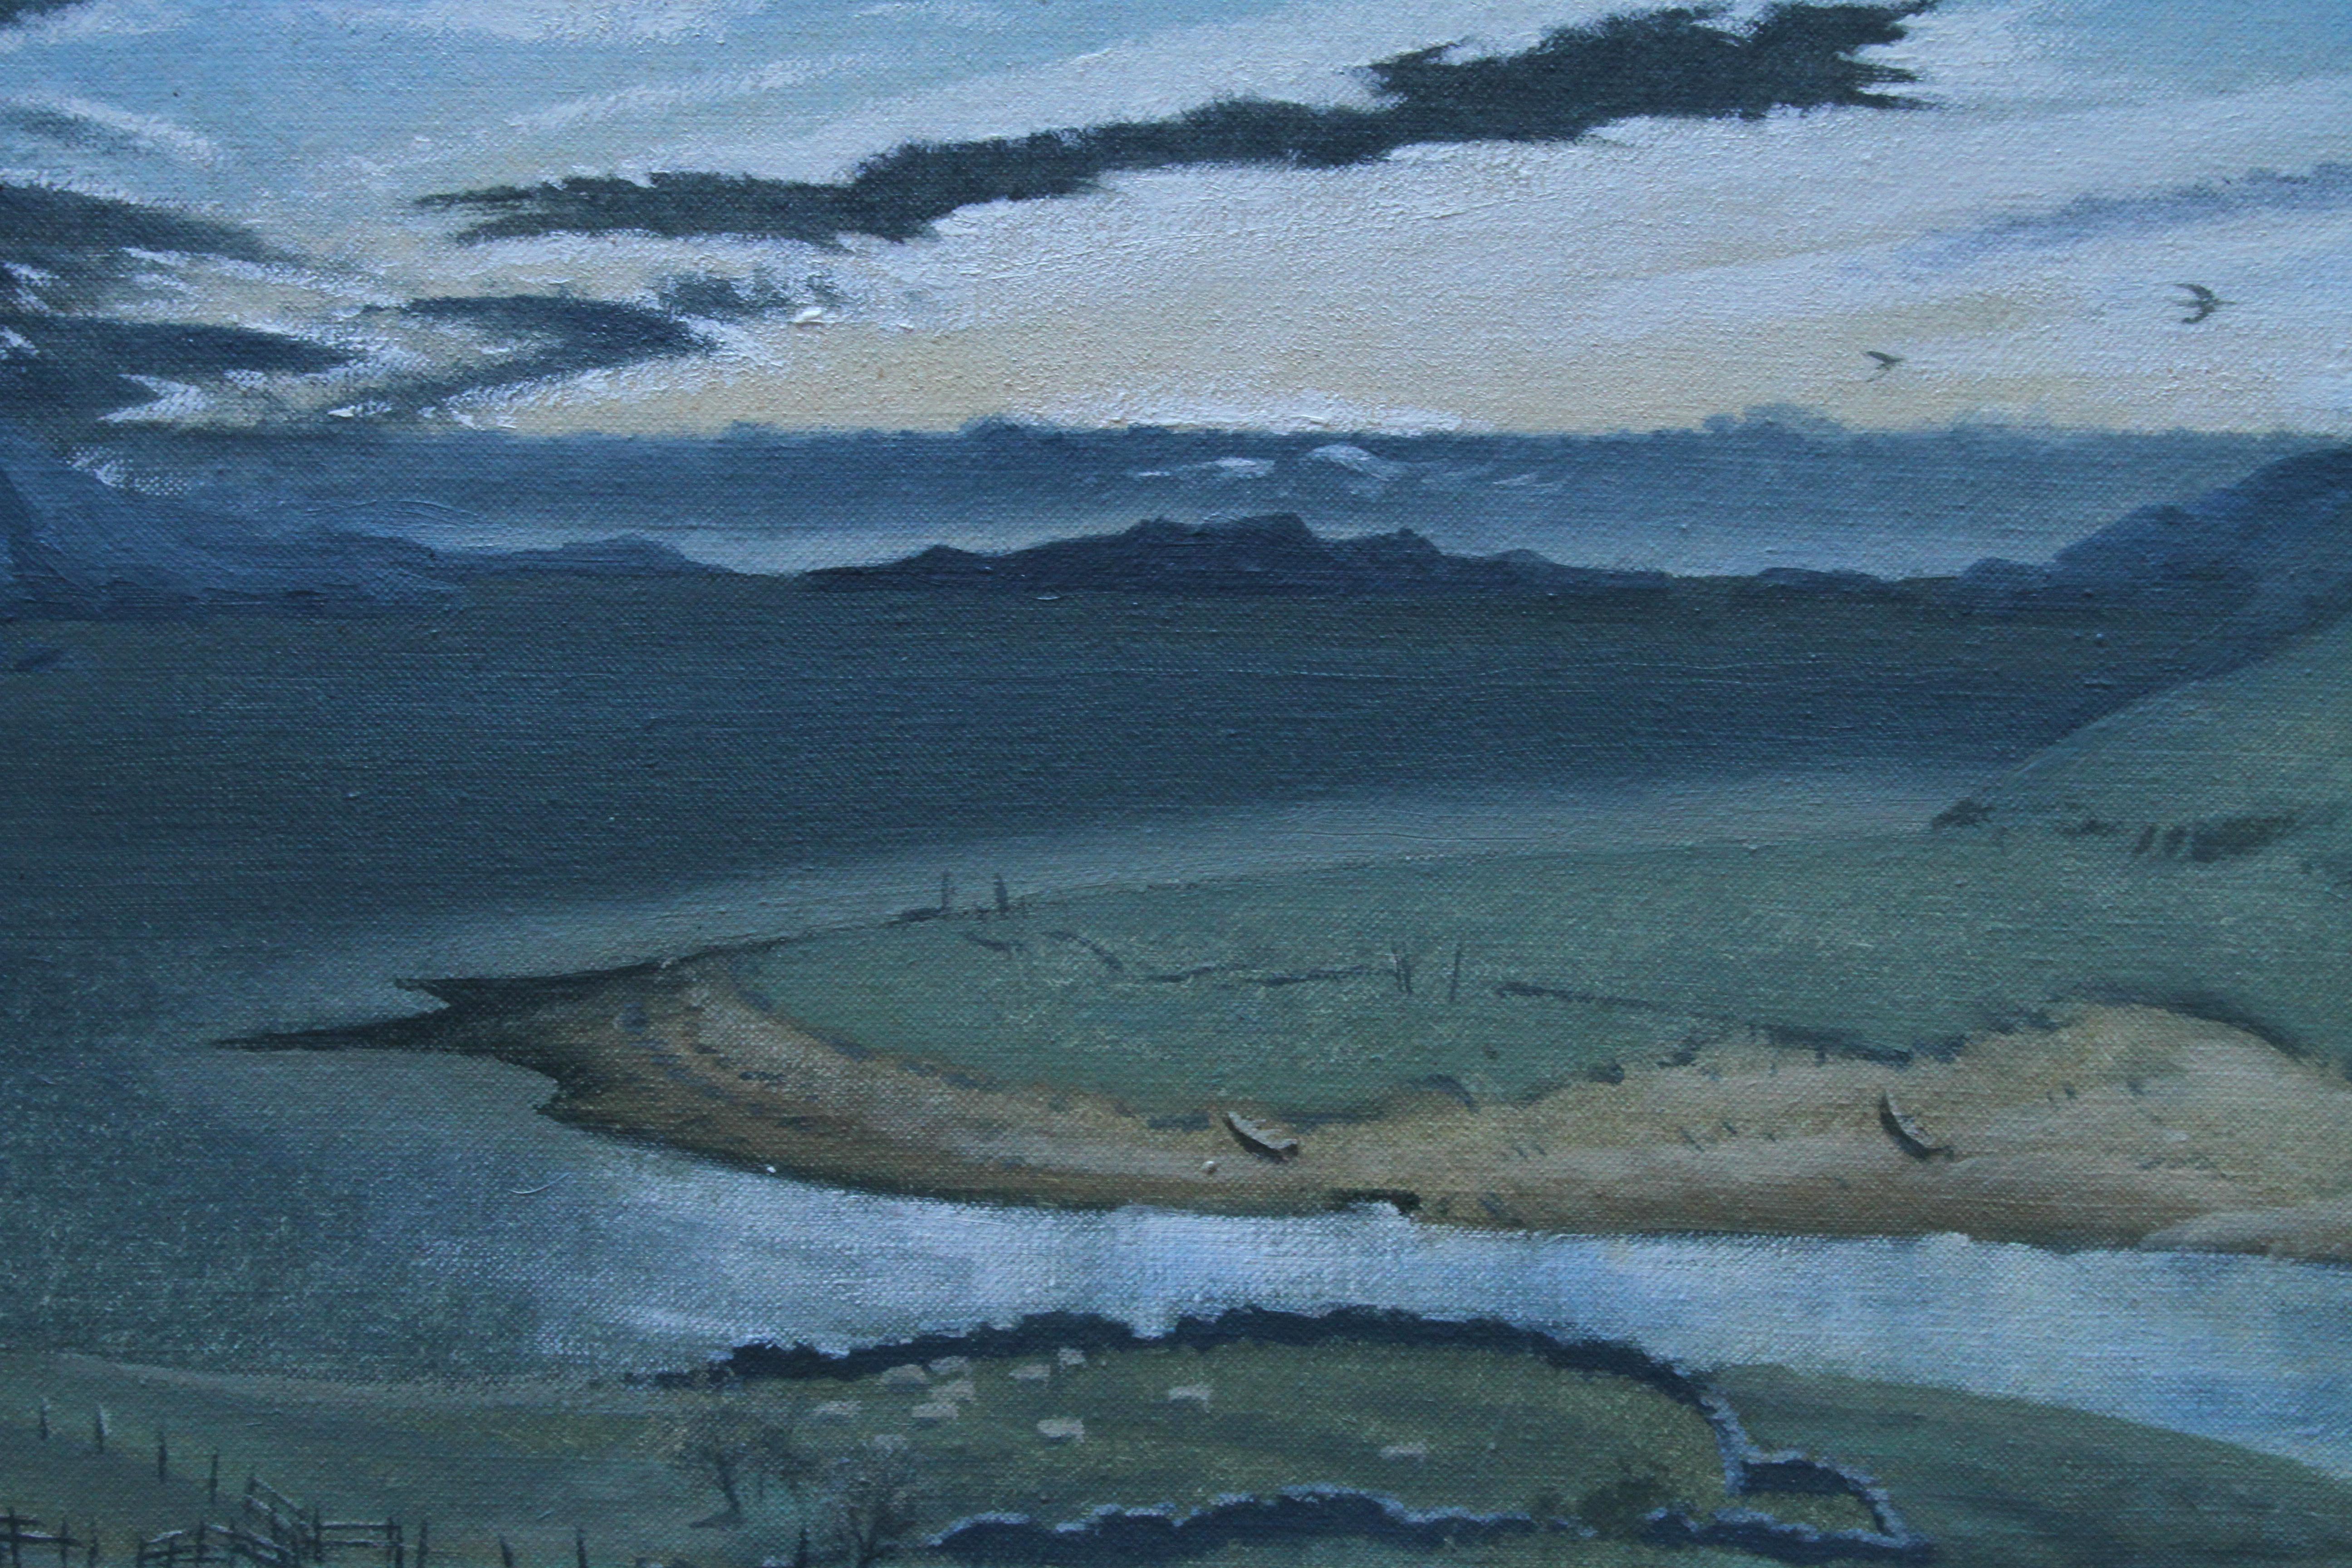 River Landscape - British 1970's Post Impressionist art oil painting - Post-Impressionist Painting by Laurence Henry Irving